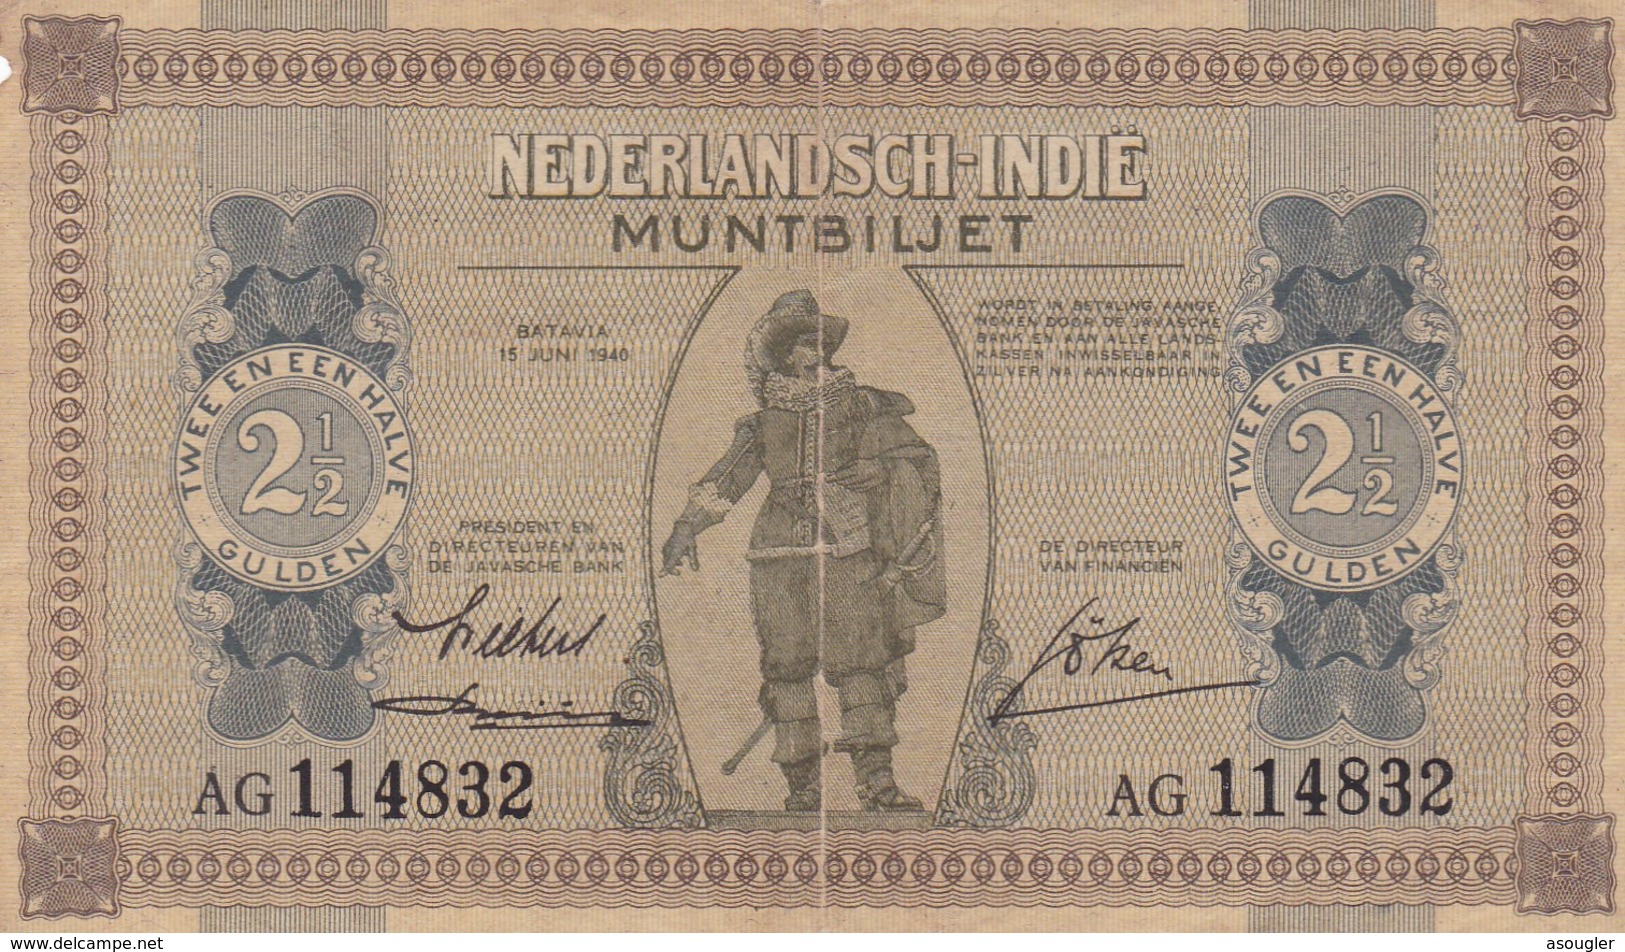 NETHERLANDS INDIES 2 1/2  GULDEN 1940 MUNTBILJETTEN ISSUE VG-F P-109a  (free Shipping Via Regular Air Mail (buyer Risk) - Autres - Asie